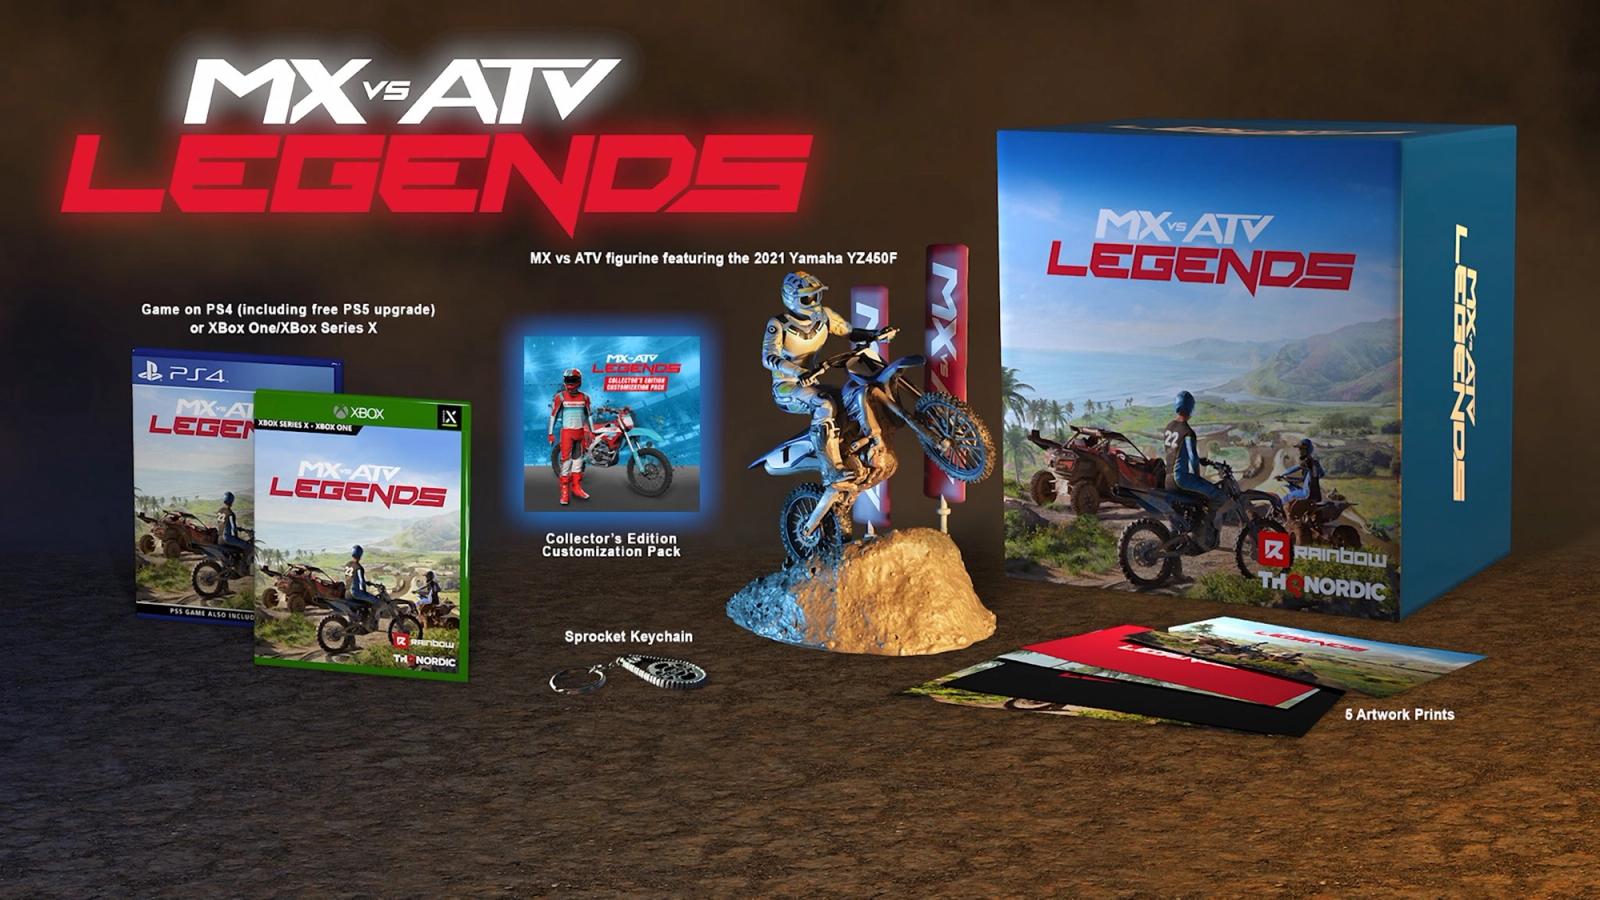 MX vs ATV Legends Collector's Edition